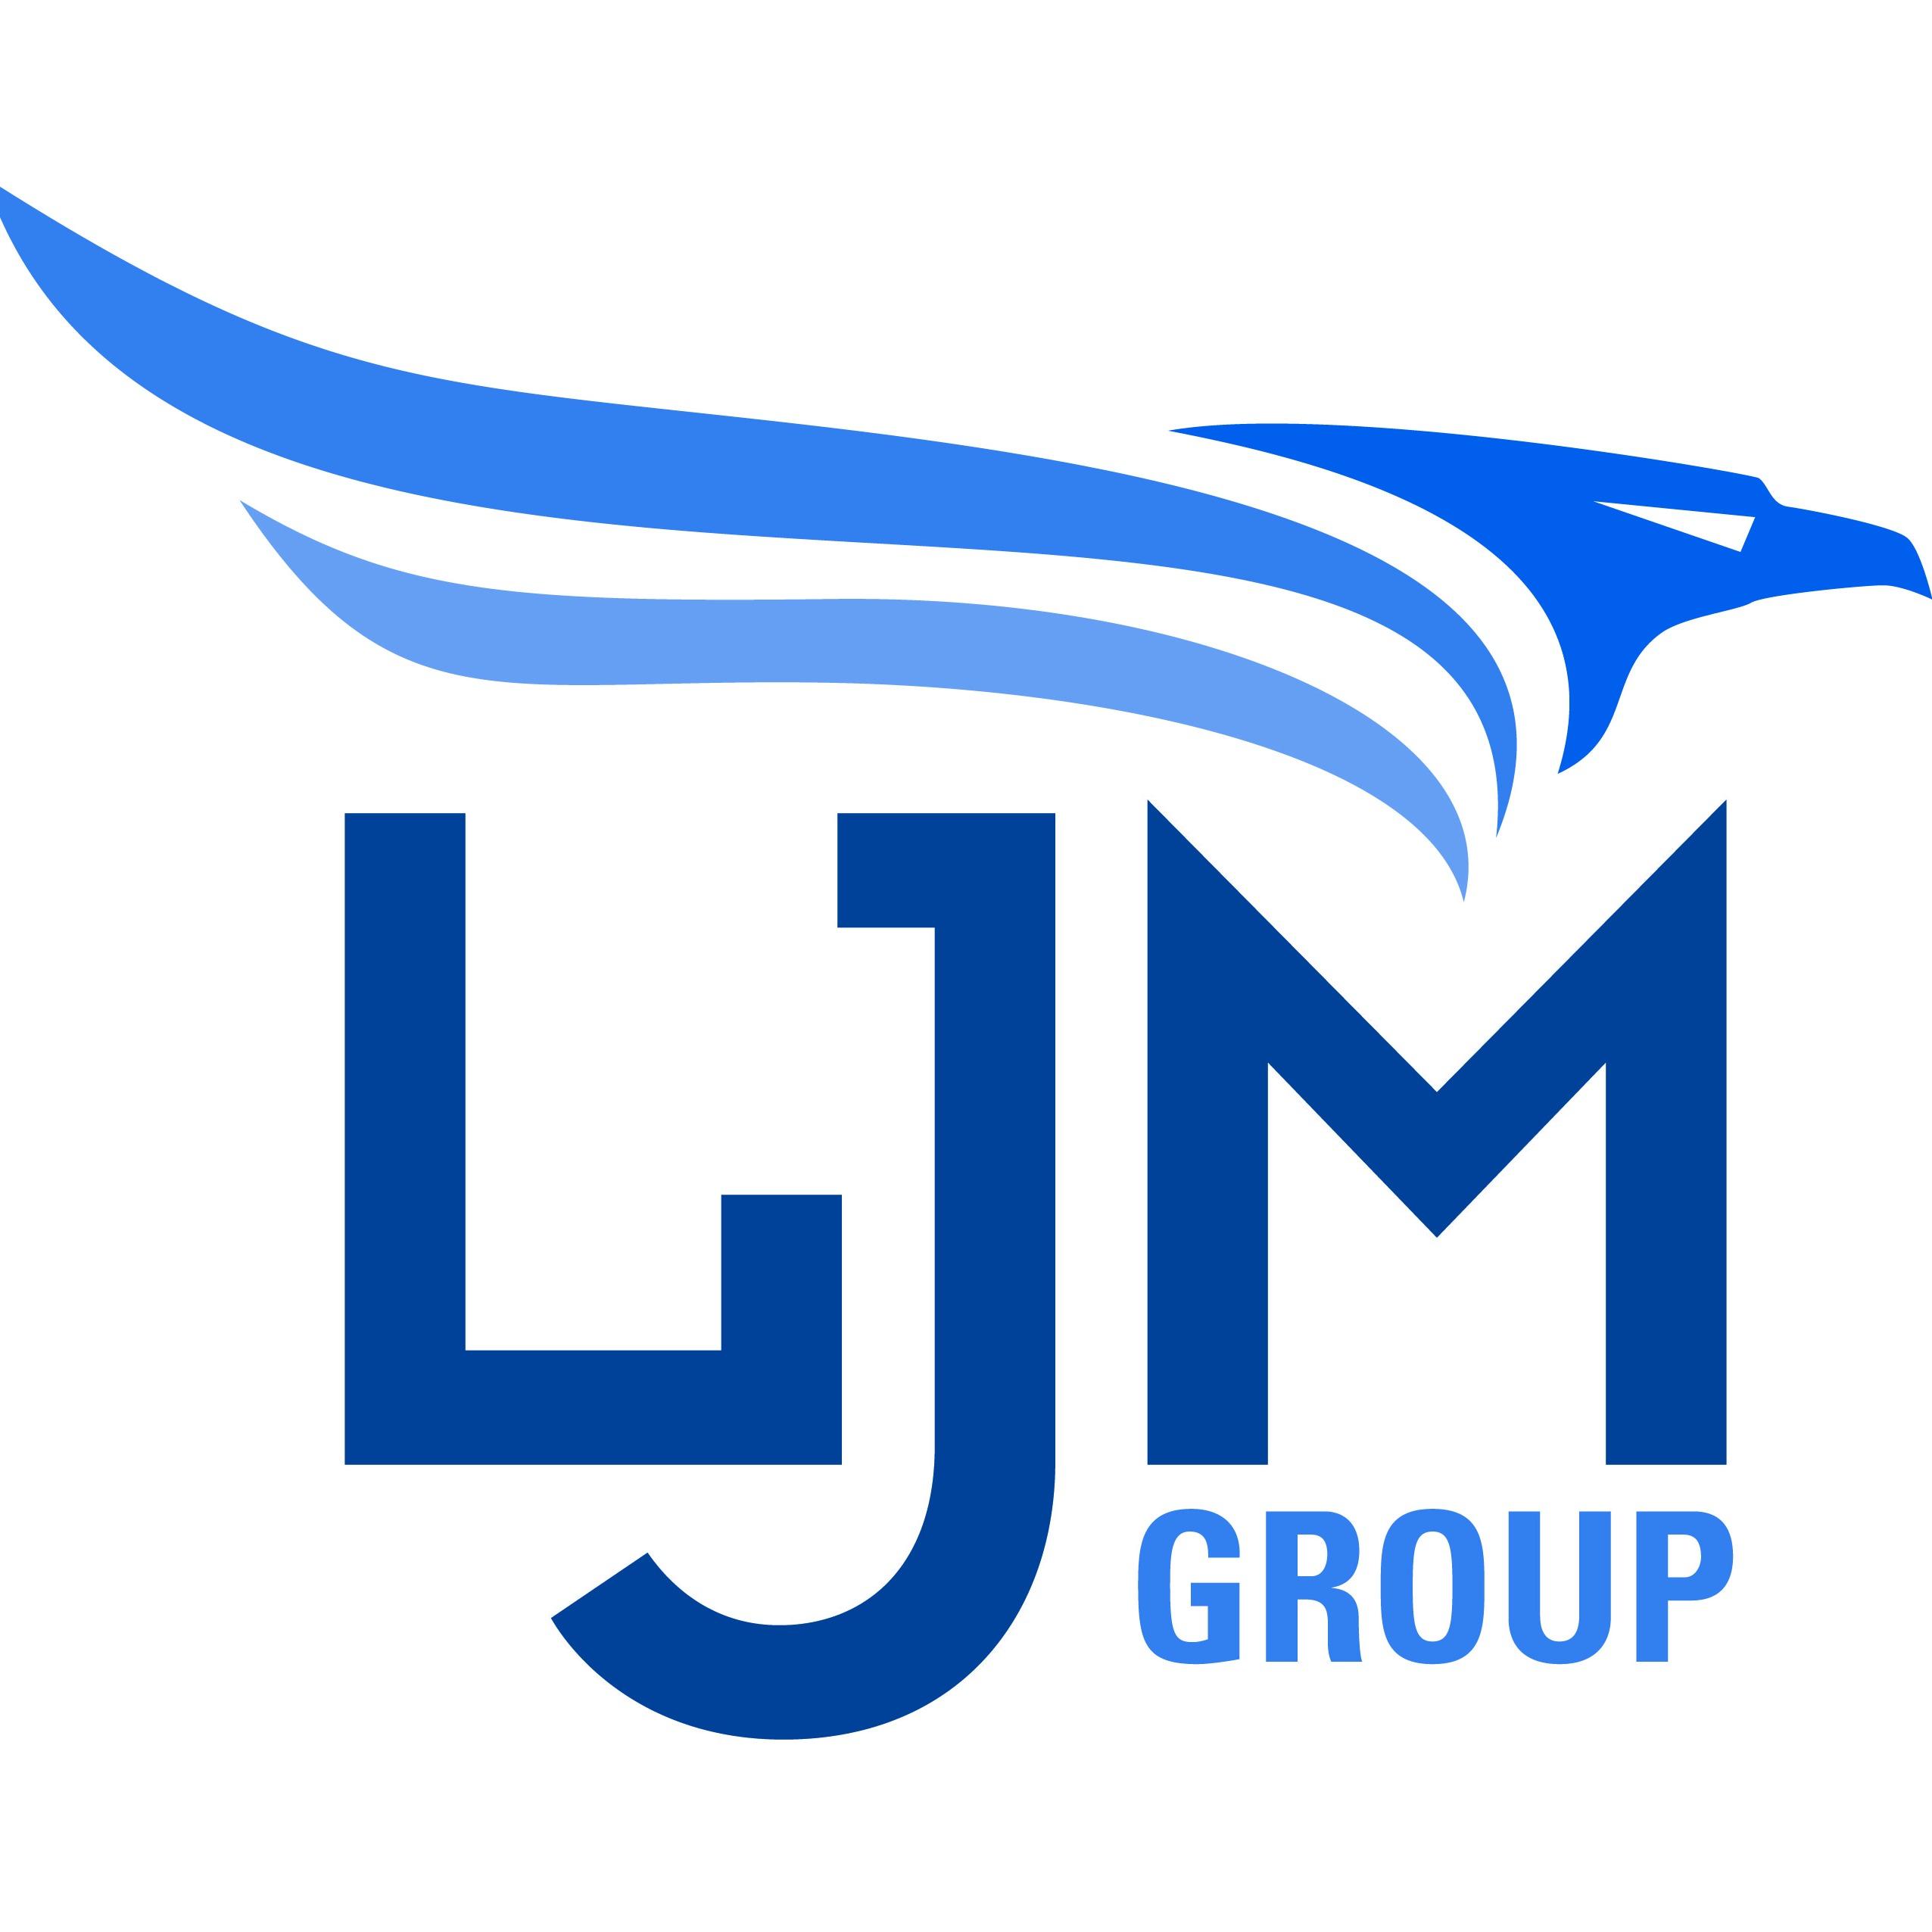 LJM Group Logo